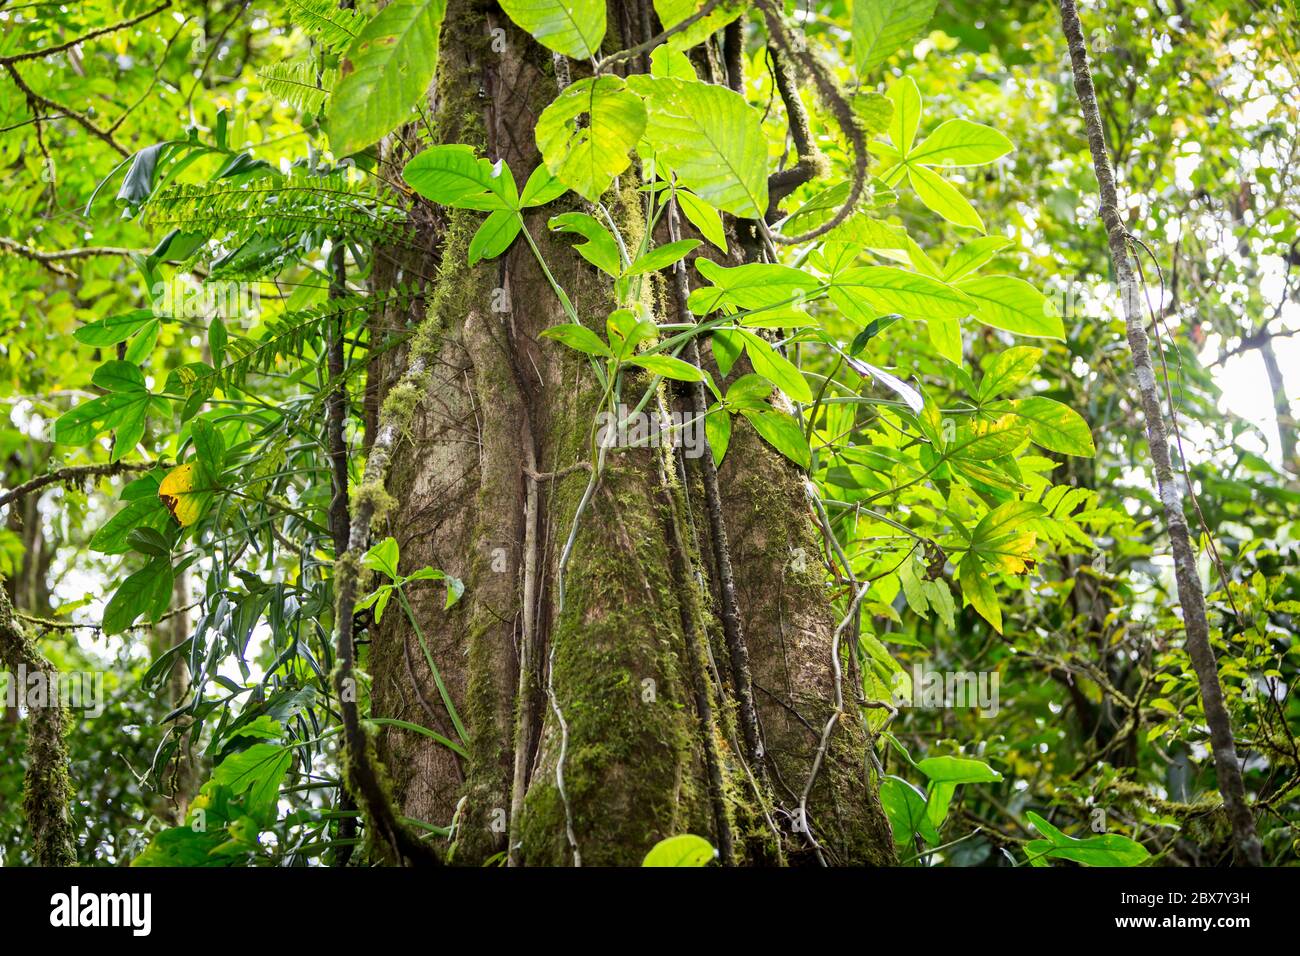 Foresta pluviale con viti che competono per luce, acqua e azoto, Sensoria, riserva tropicale della foresta pluviale, Rincon de la Vieja, Provincia de Alajuela, Foto Stock